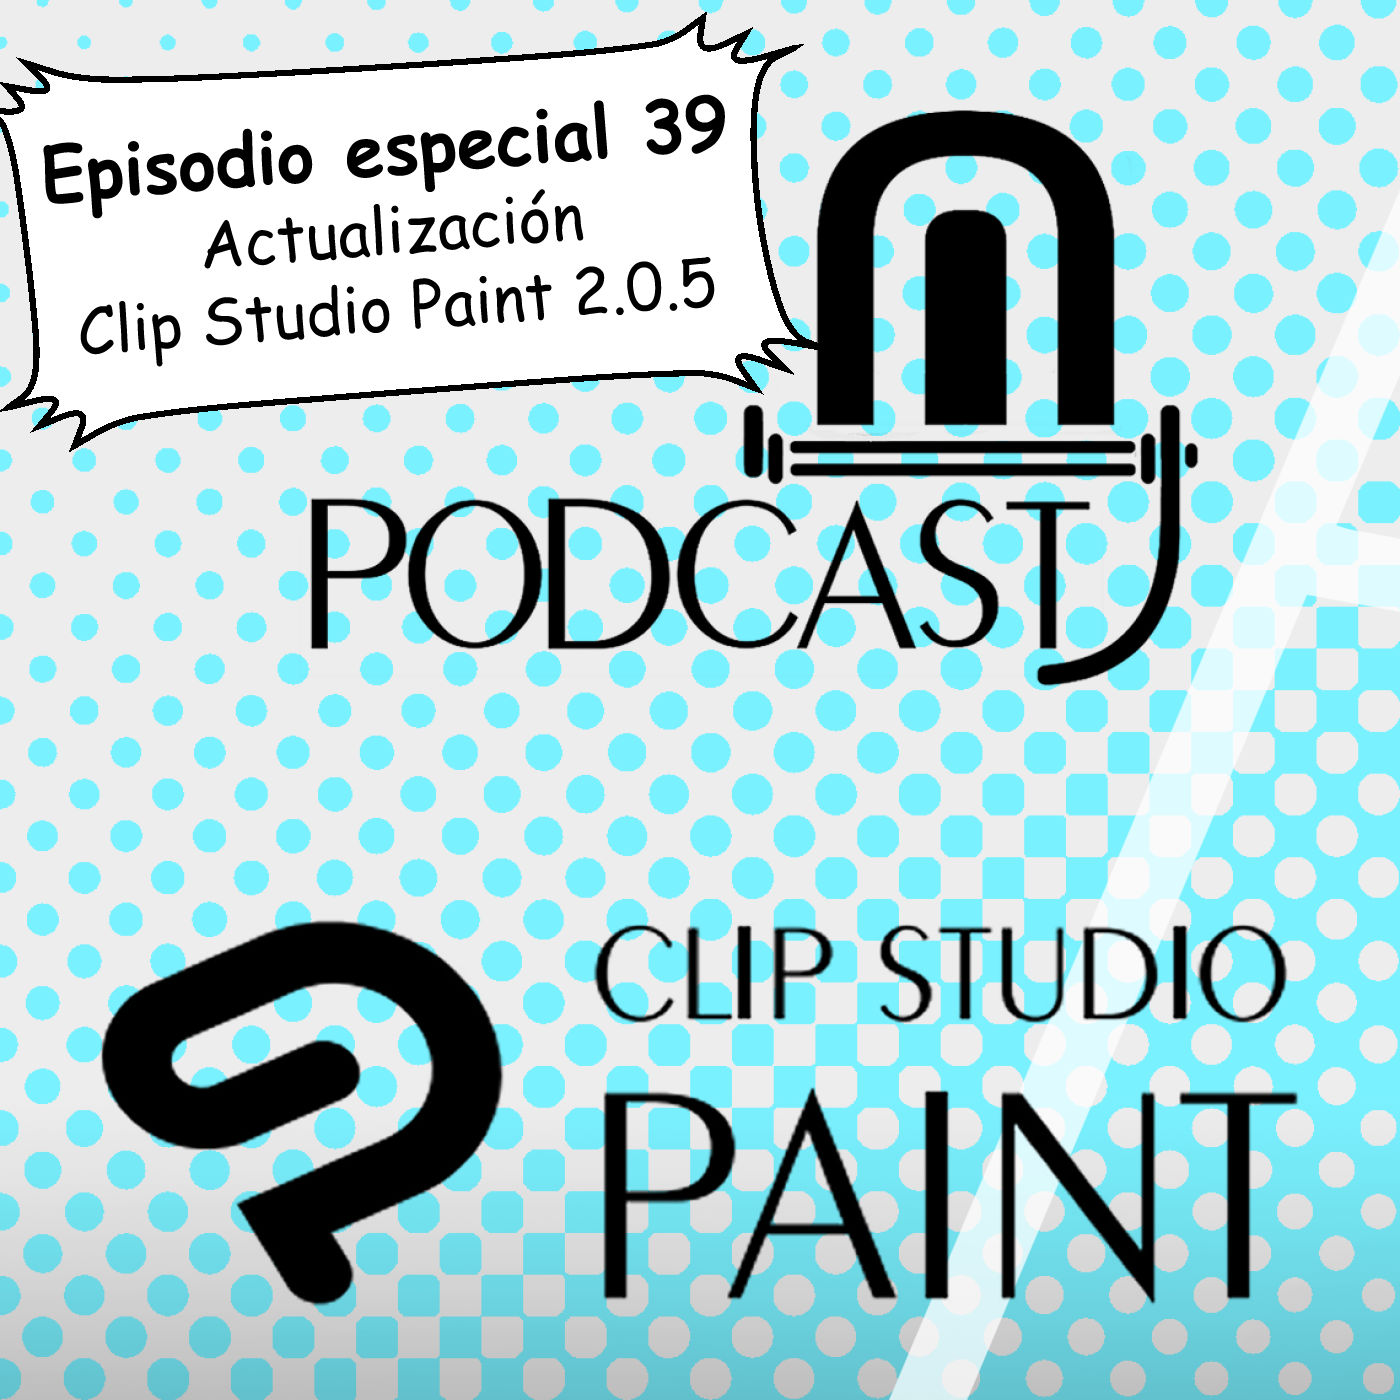 CSP especial 39. Novedades de la actualización 2.0.5 de Clip Studio Paint